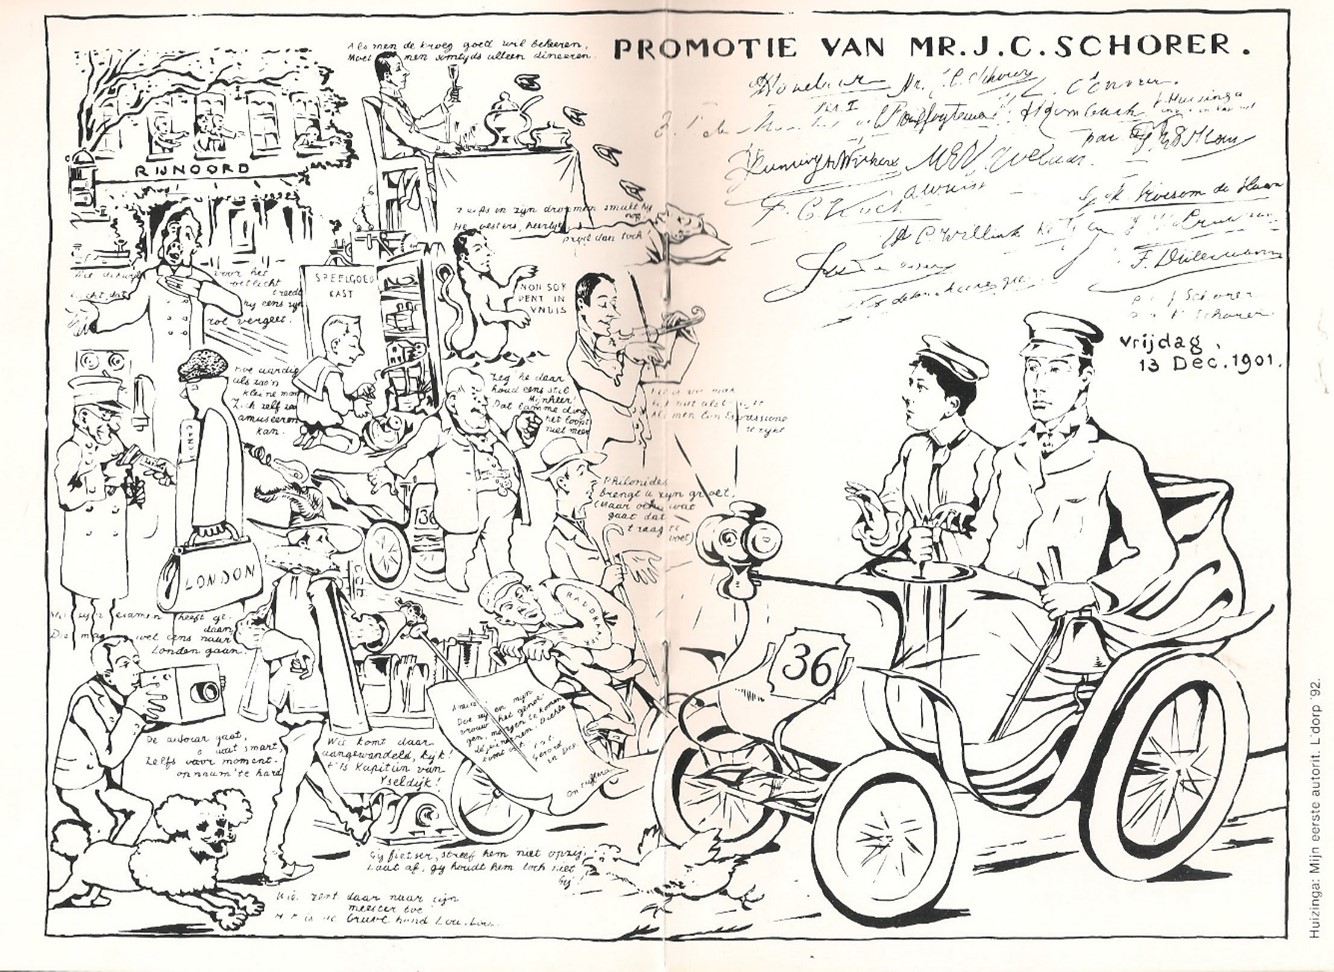 Promotieplaatje van Mr. J.C. Schorer, 13-12-1901 te Leiden.